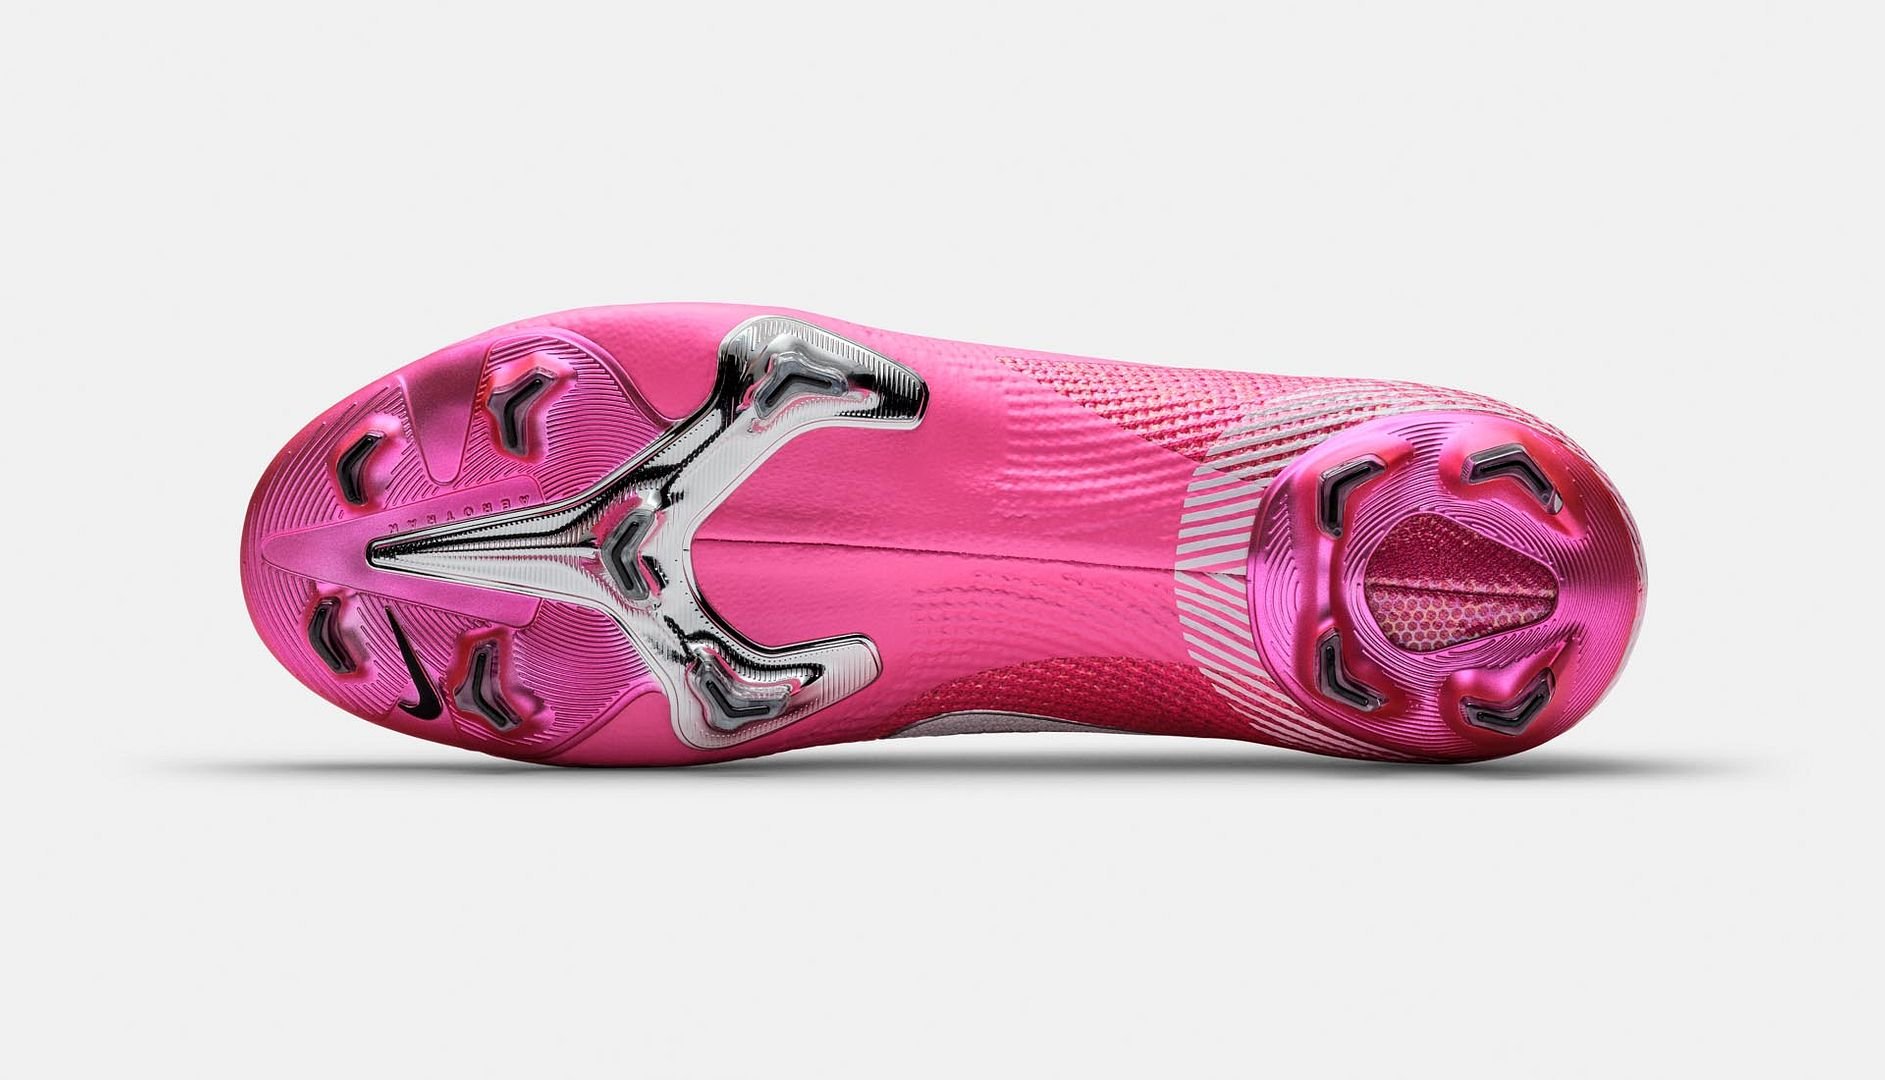 Vẻ ngoài đẹp mắt của Nike Mercurial Mbappé Rosa